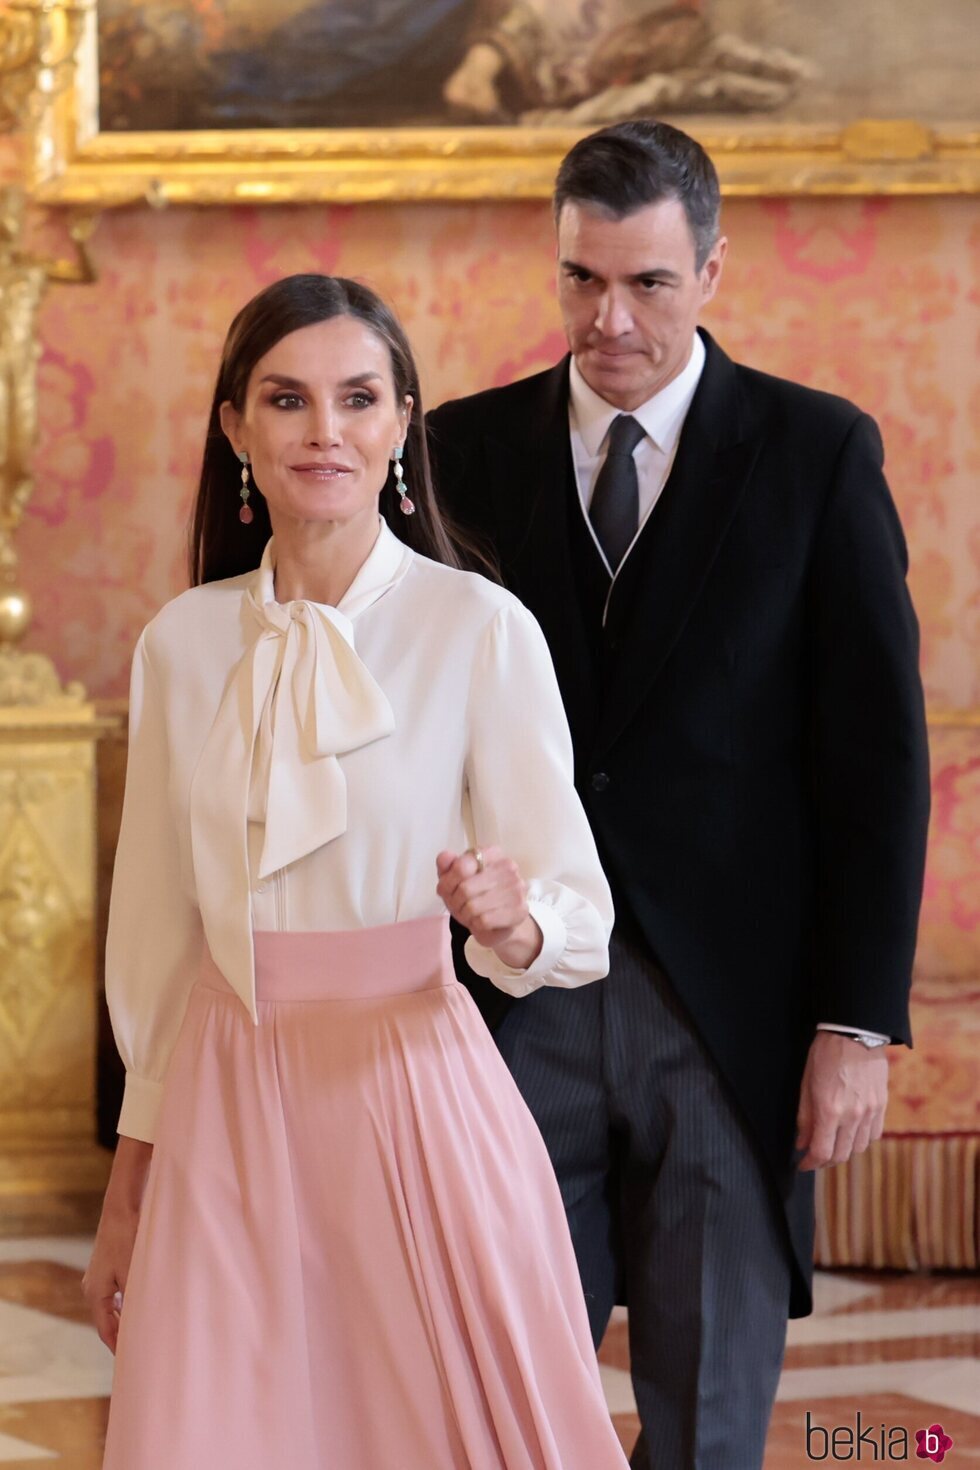 La Reina Letizia y Pedro Sánchez llegan a la recepción del Palacio Real para recibir al Cuerpo Diplomático